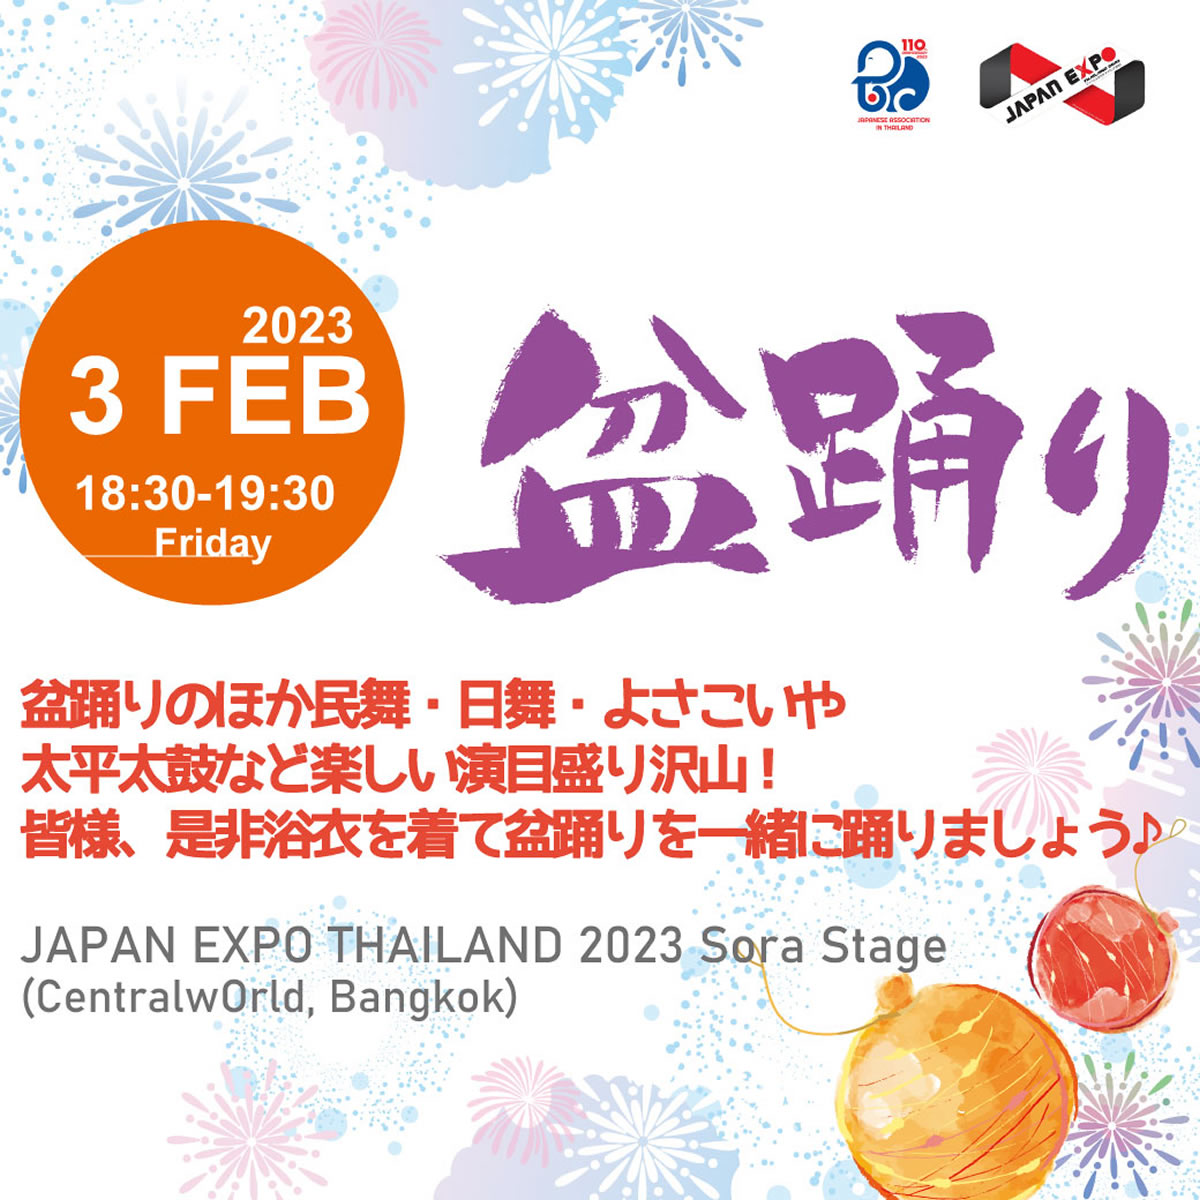 タイ国日本人会、JAPAN EXPO THAILAND 2023「盆踊り・ダンスチャレンジ」開催